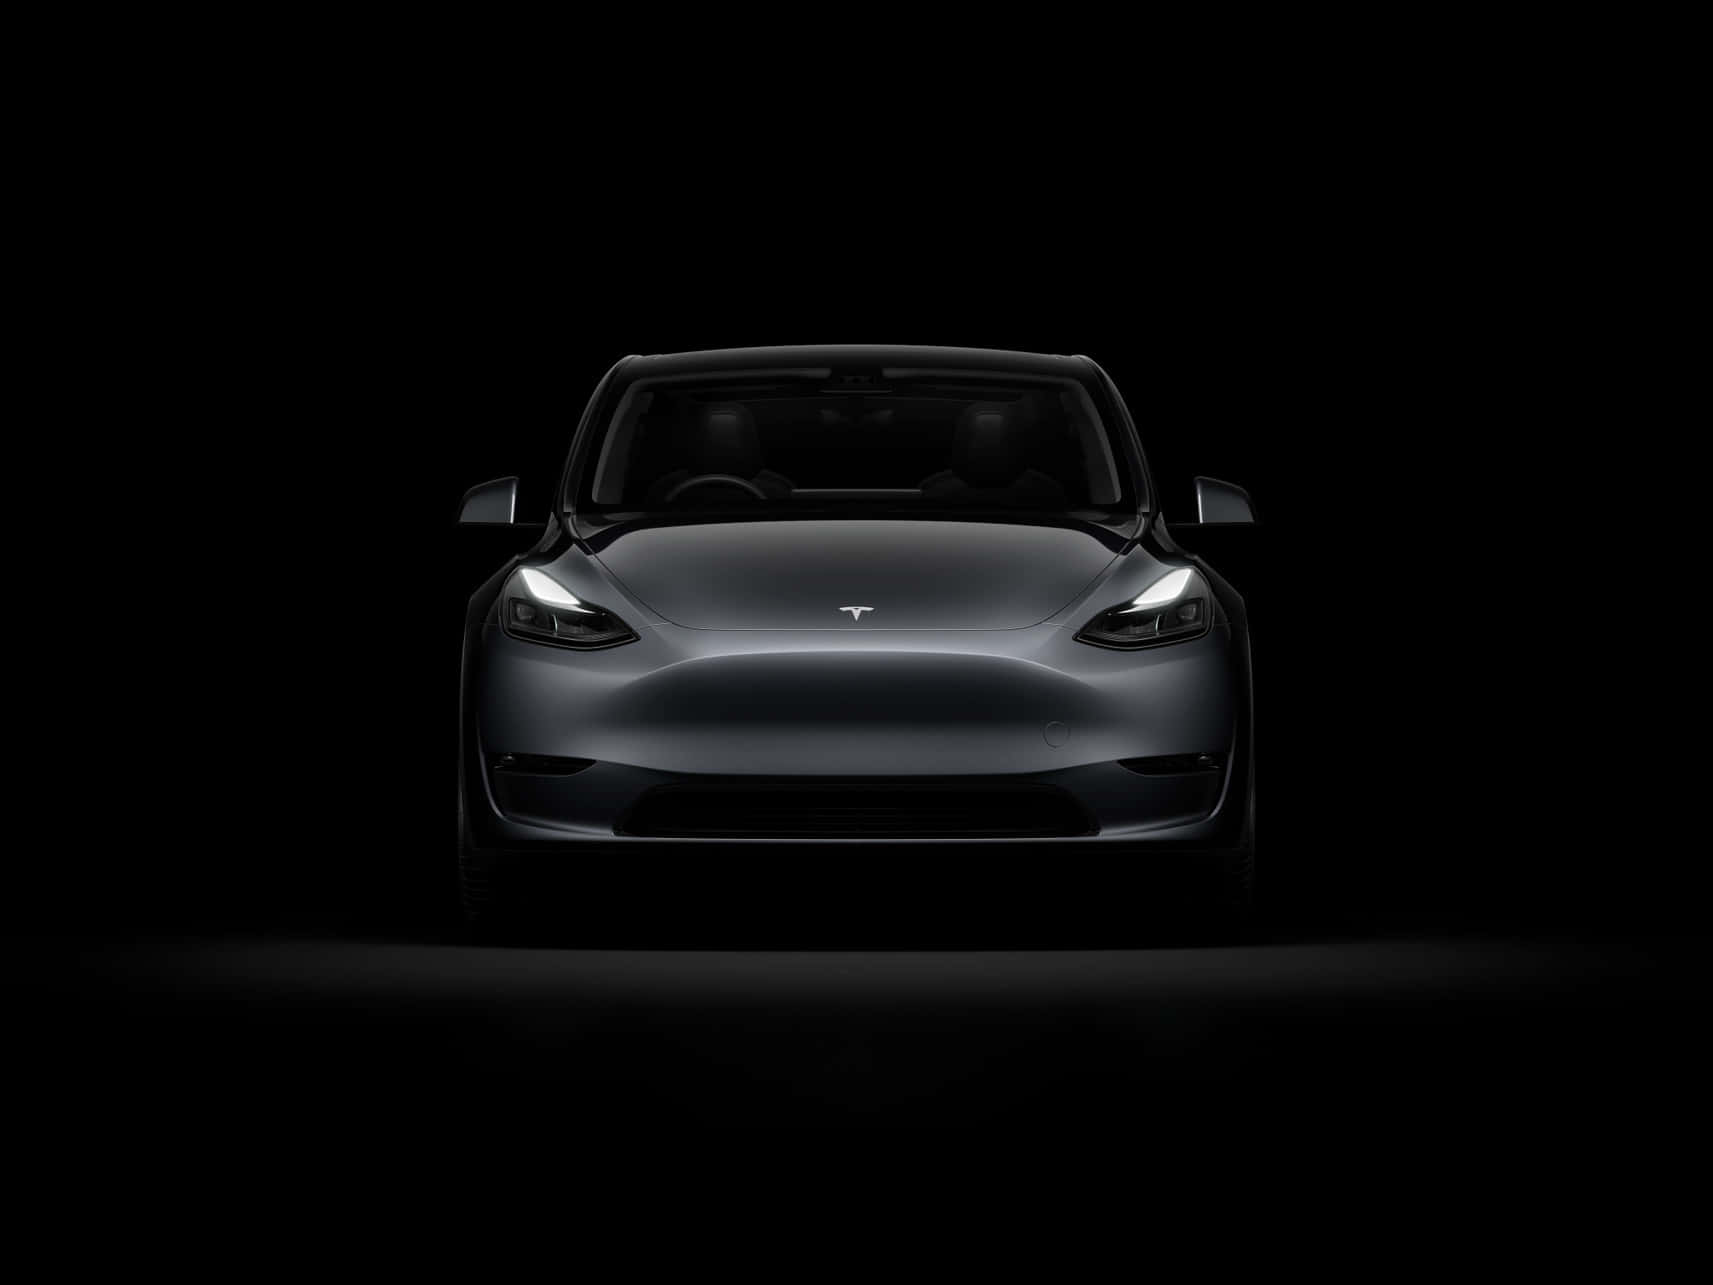 Teslamodel 3 - Inspirerer Fremtiden For Elektriske Køretøjer.